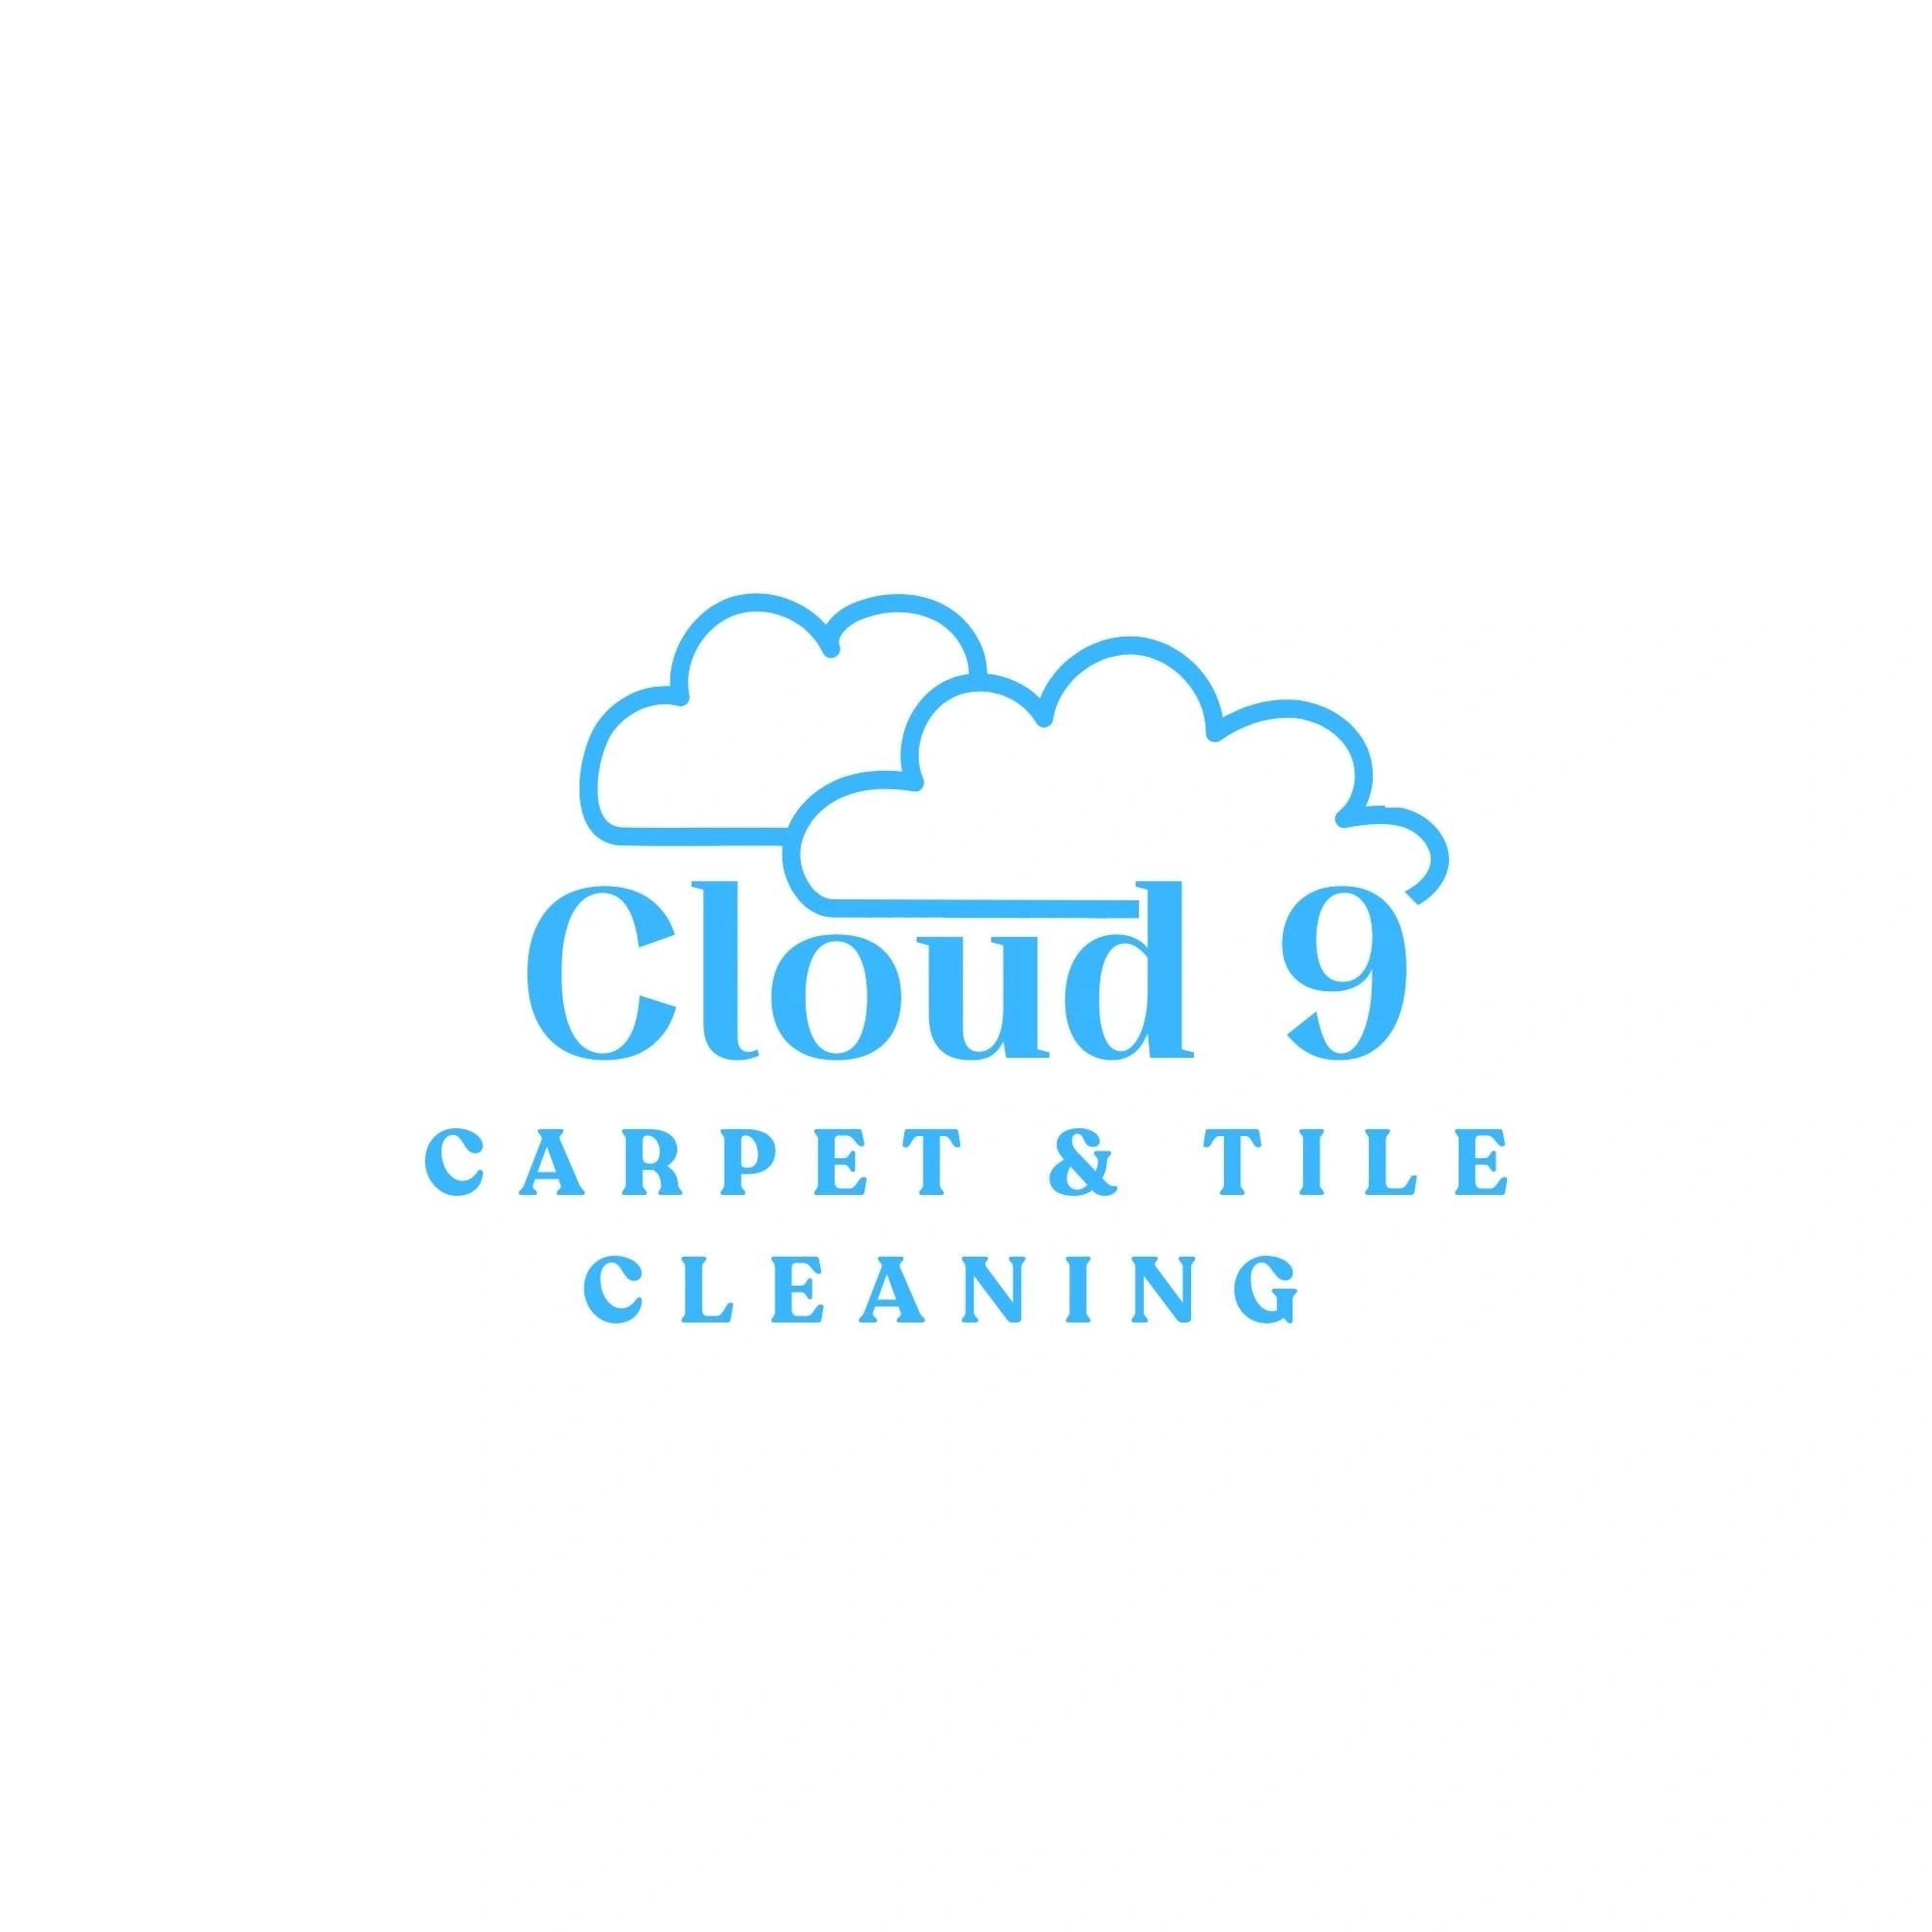 Cloud 9 Carpet & Tile Cleaning